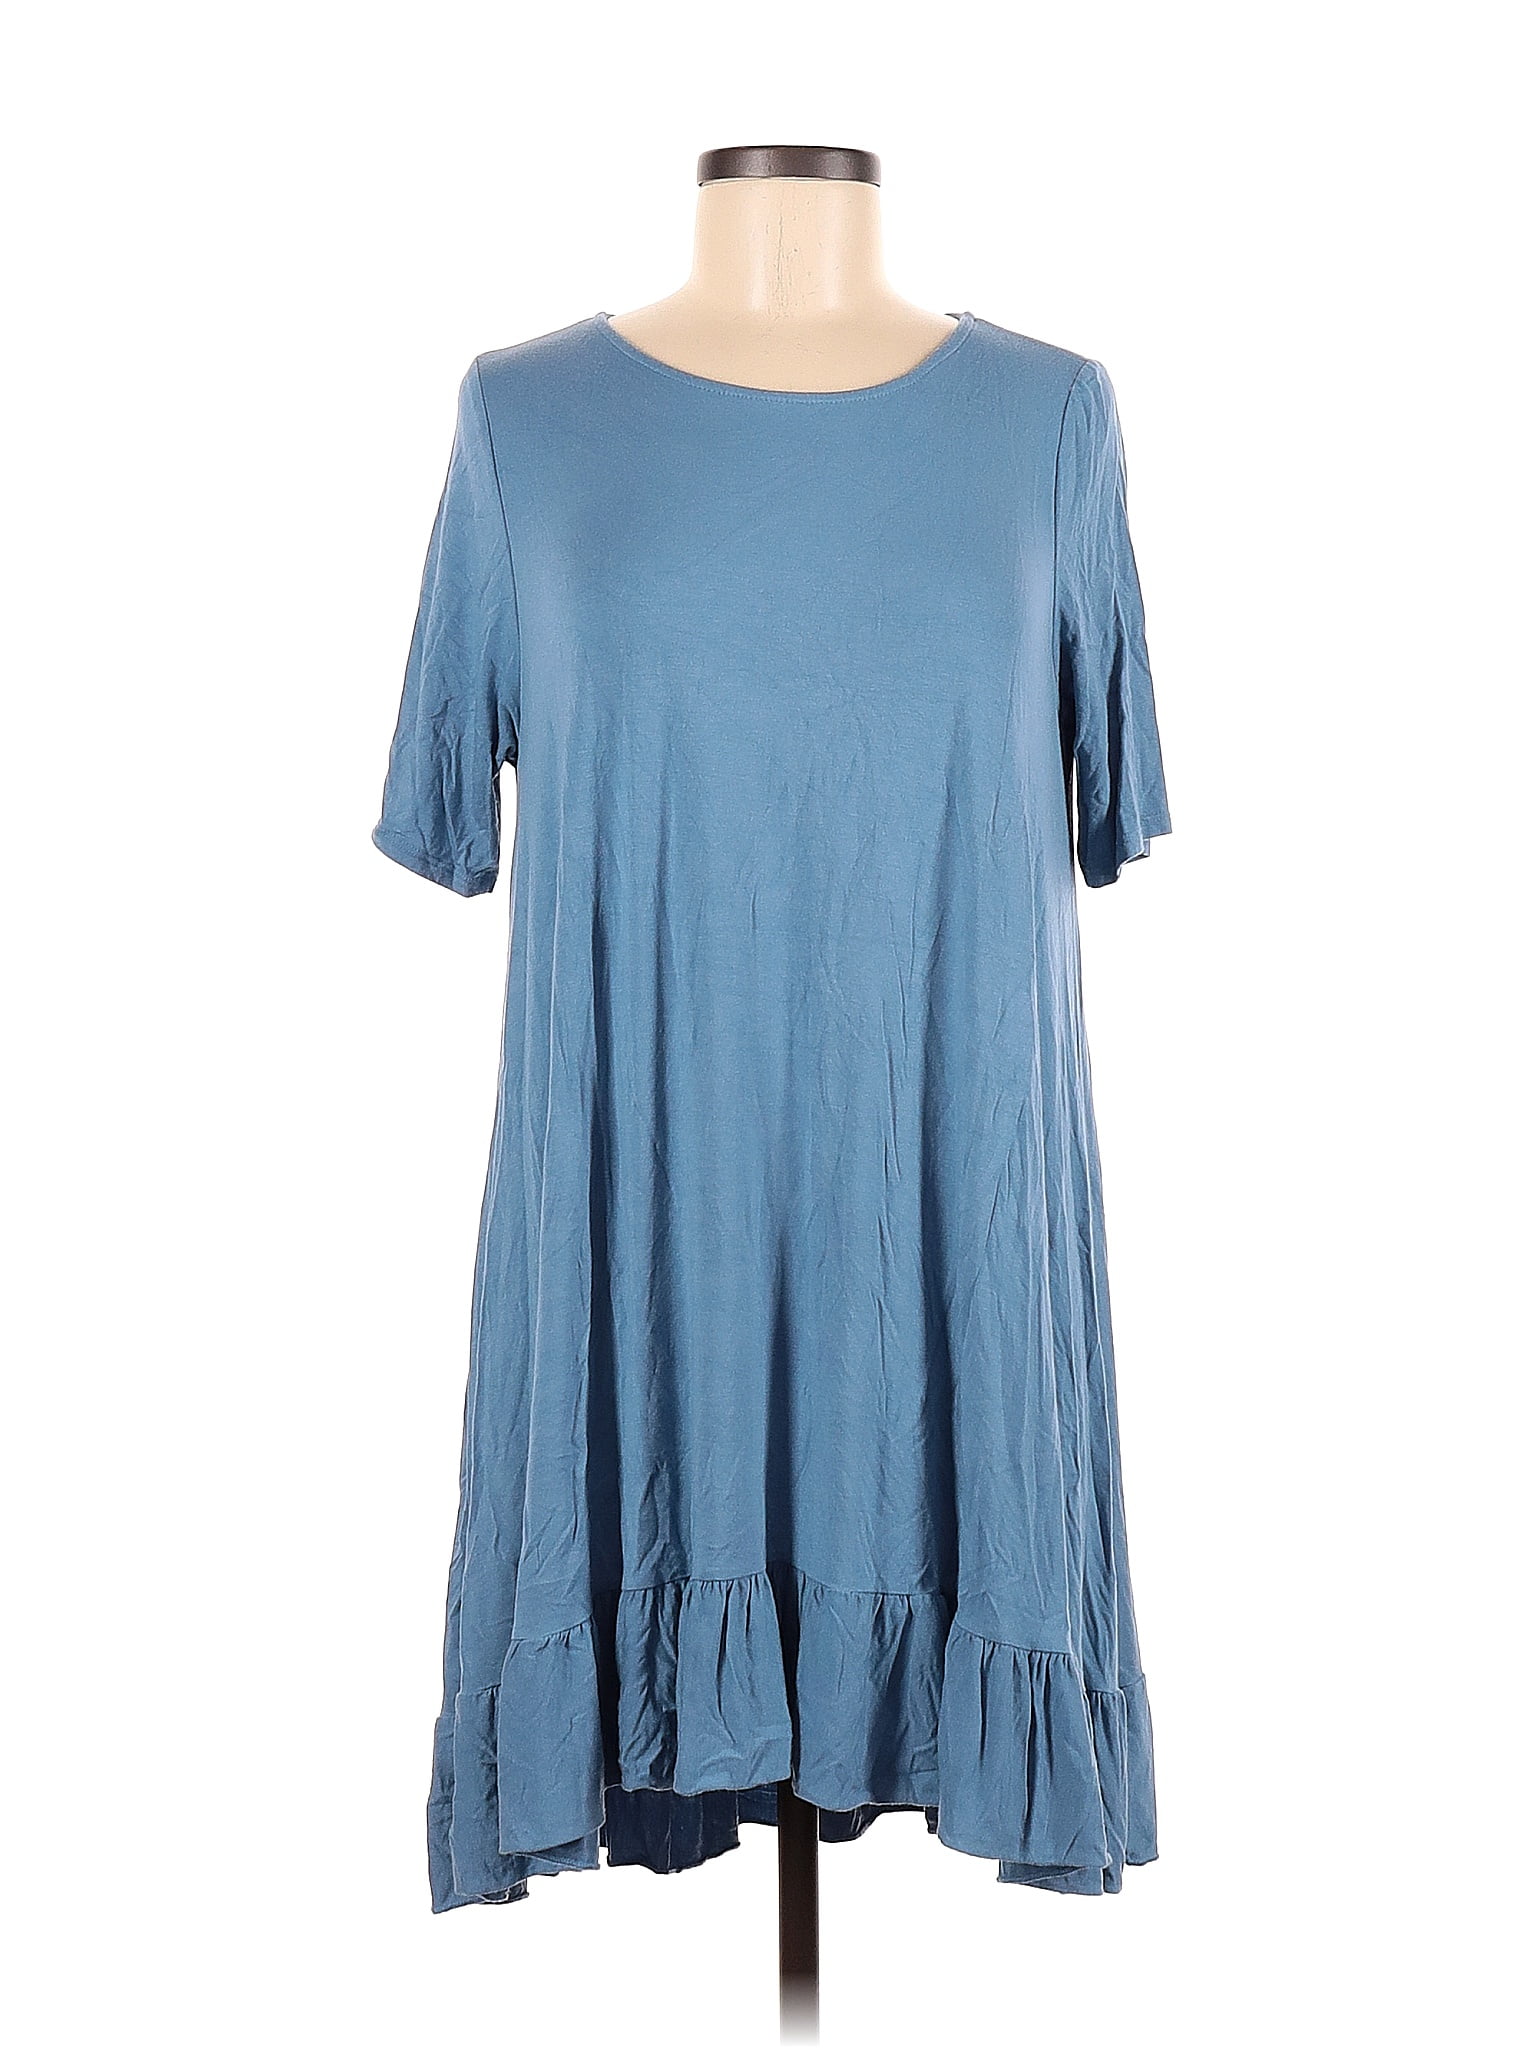 Agnes & Dora Blue Casual Dress One Size - 80% off | thredUP